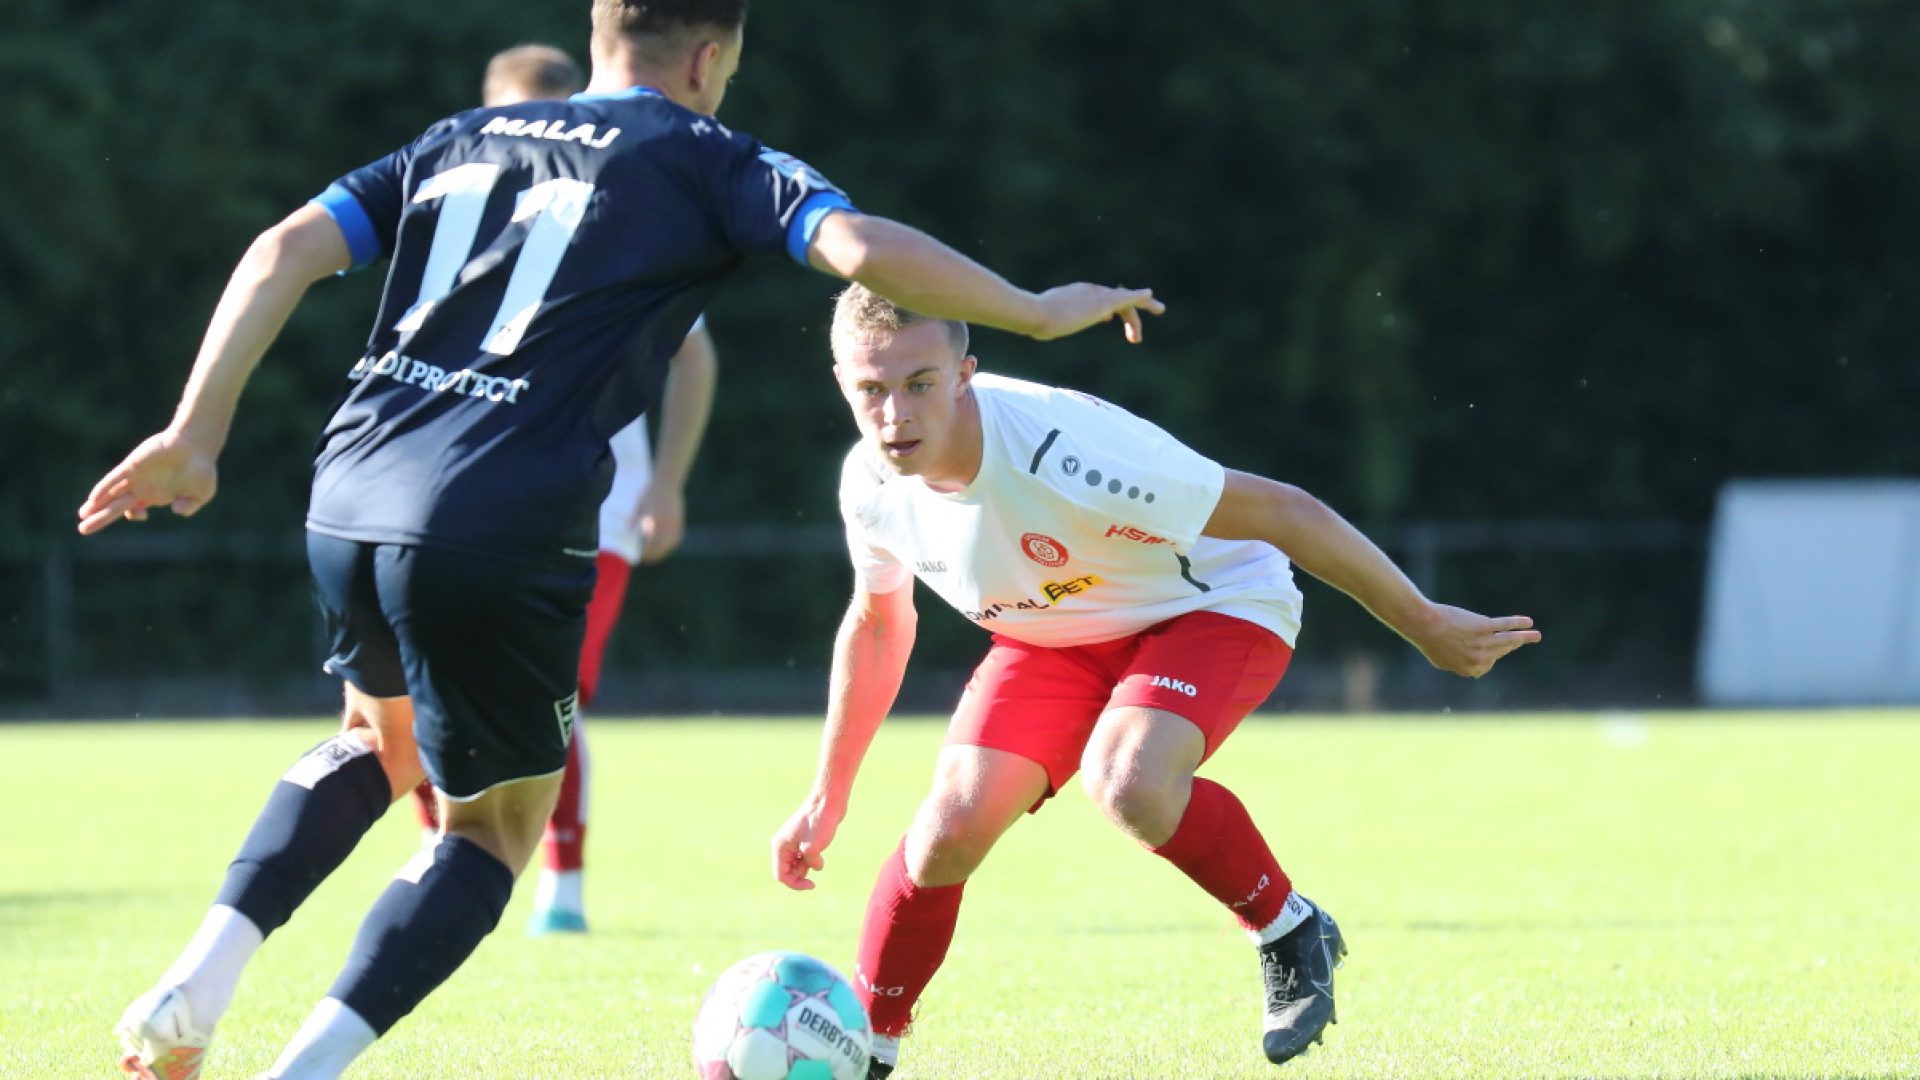 SBFV Verbandspokal 2022/23
2. Runde, 10.08.2022
SC Pfullendorf - FC Rielasingen-Arlen 0:2 (0:0)